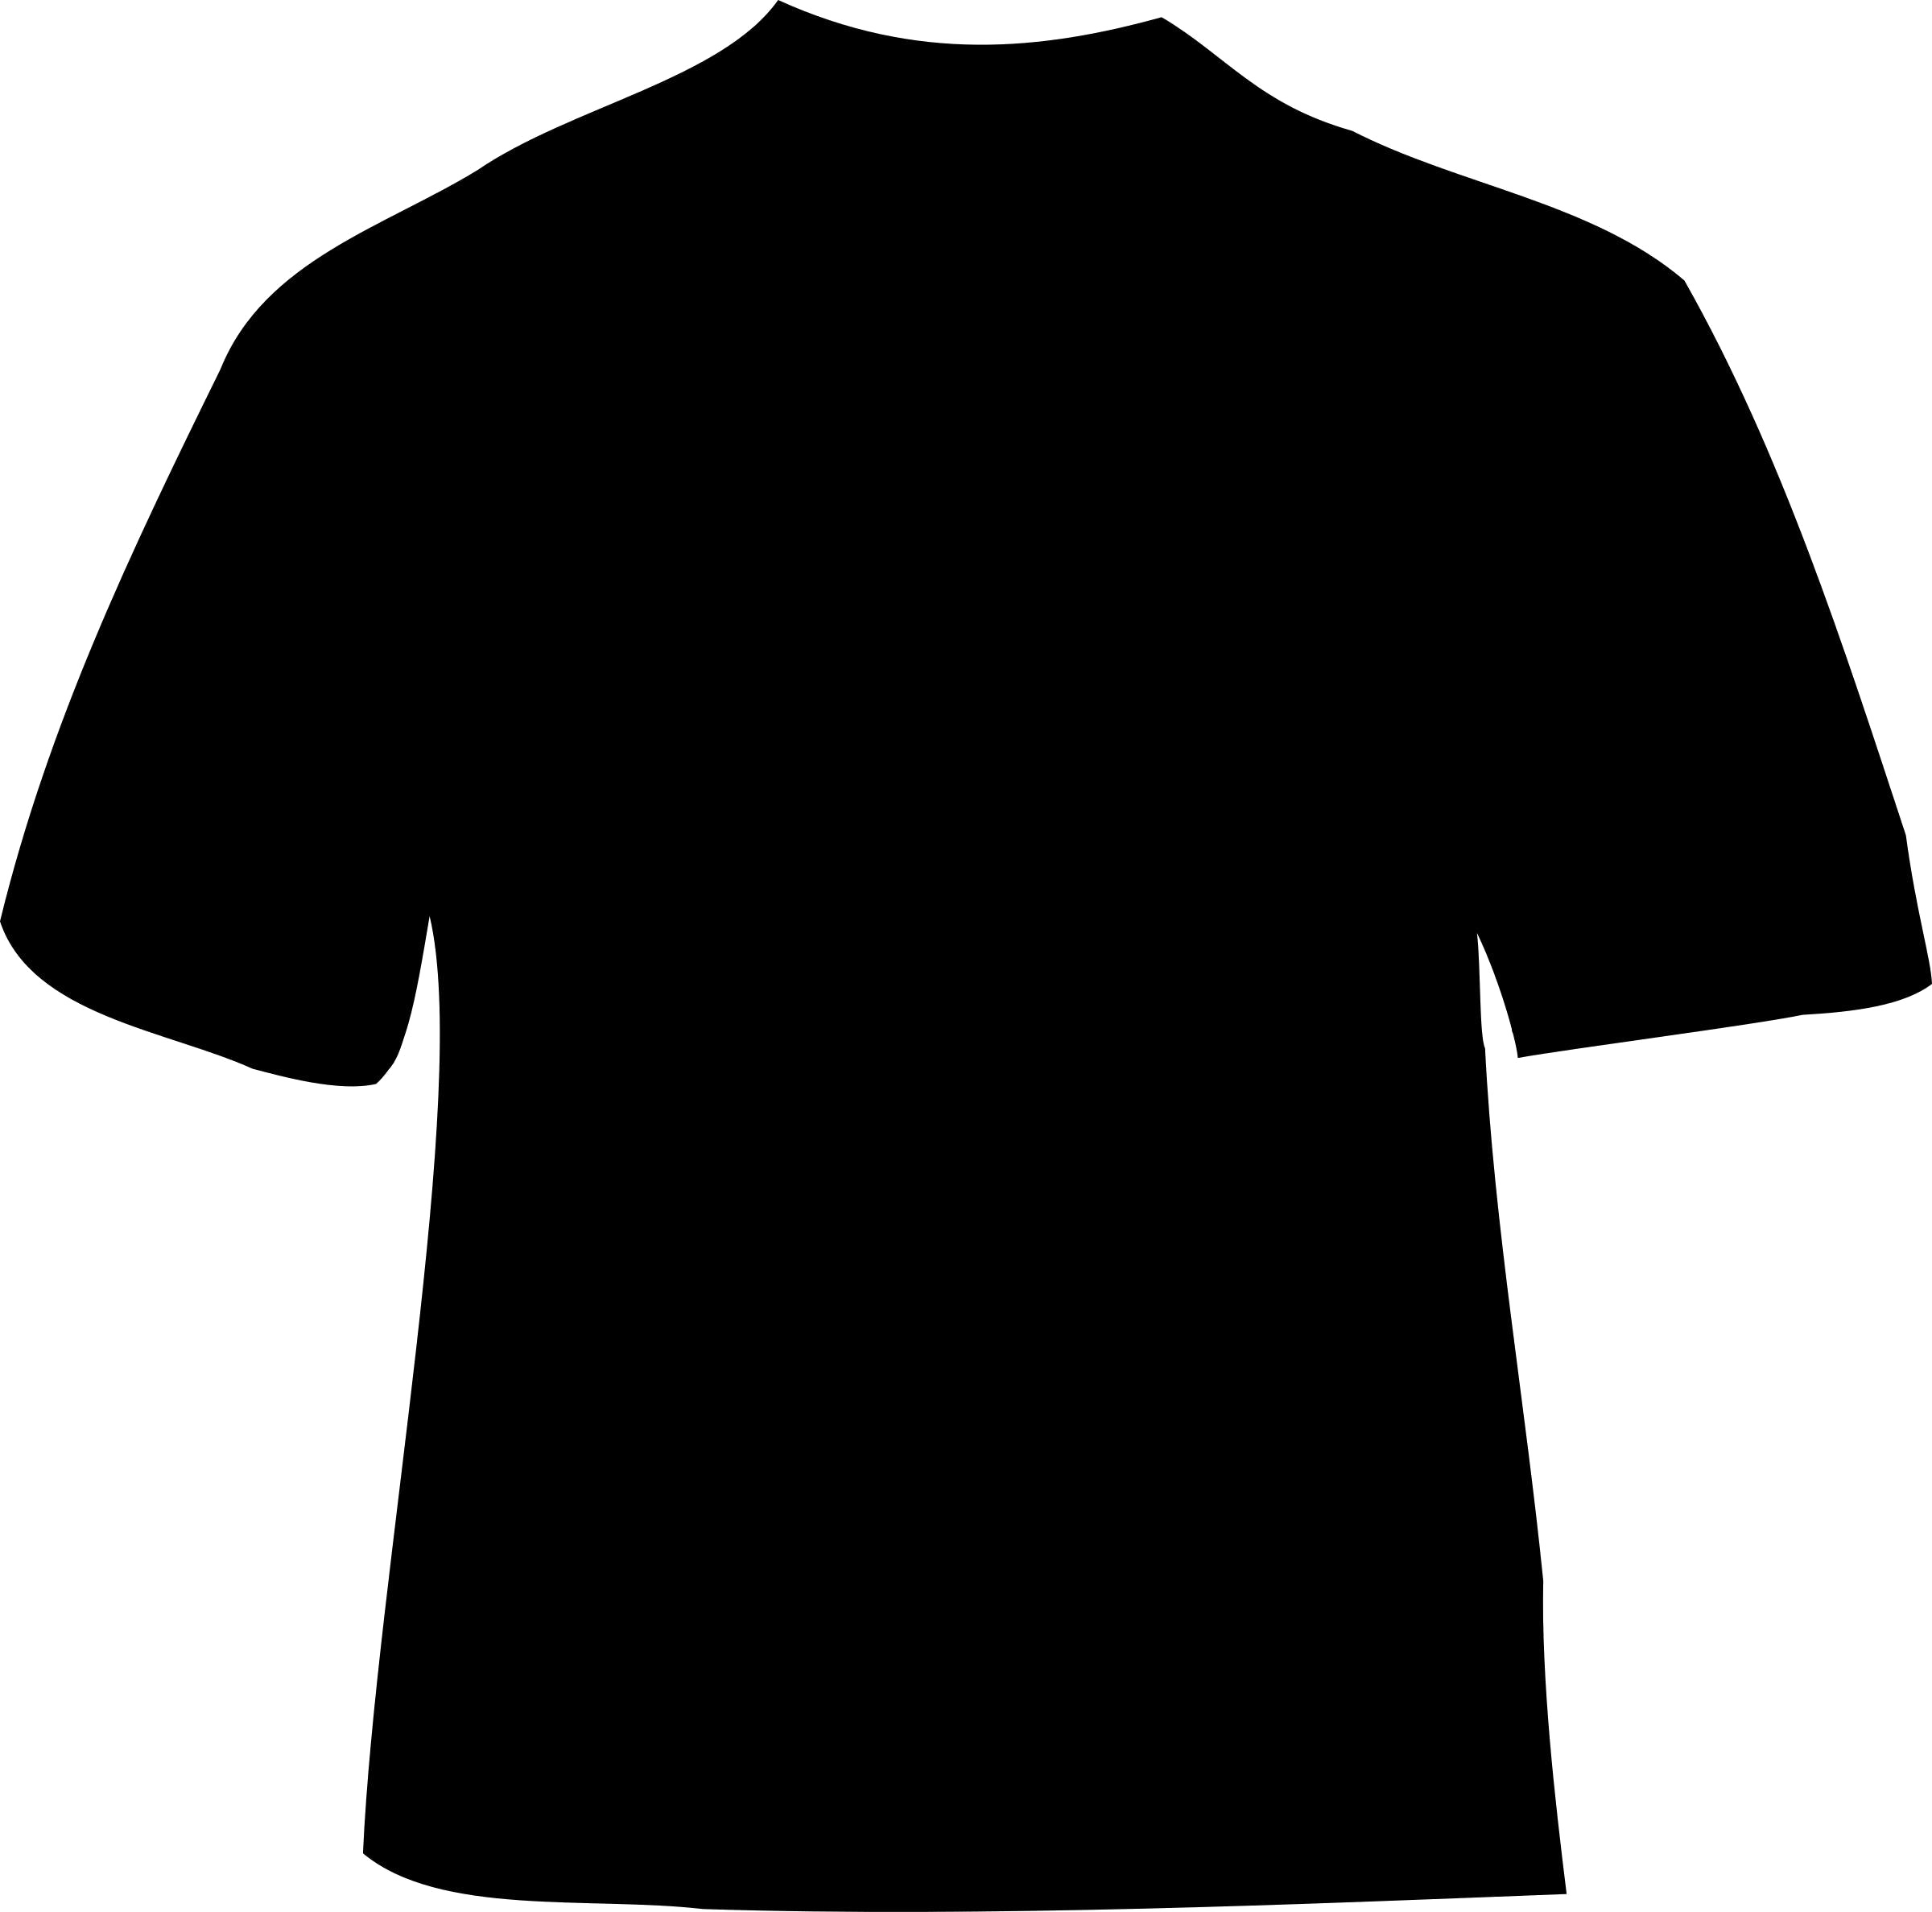 Black T-Shirt Free PNG Image